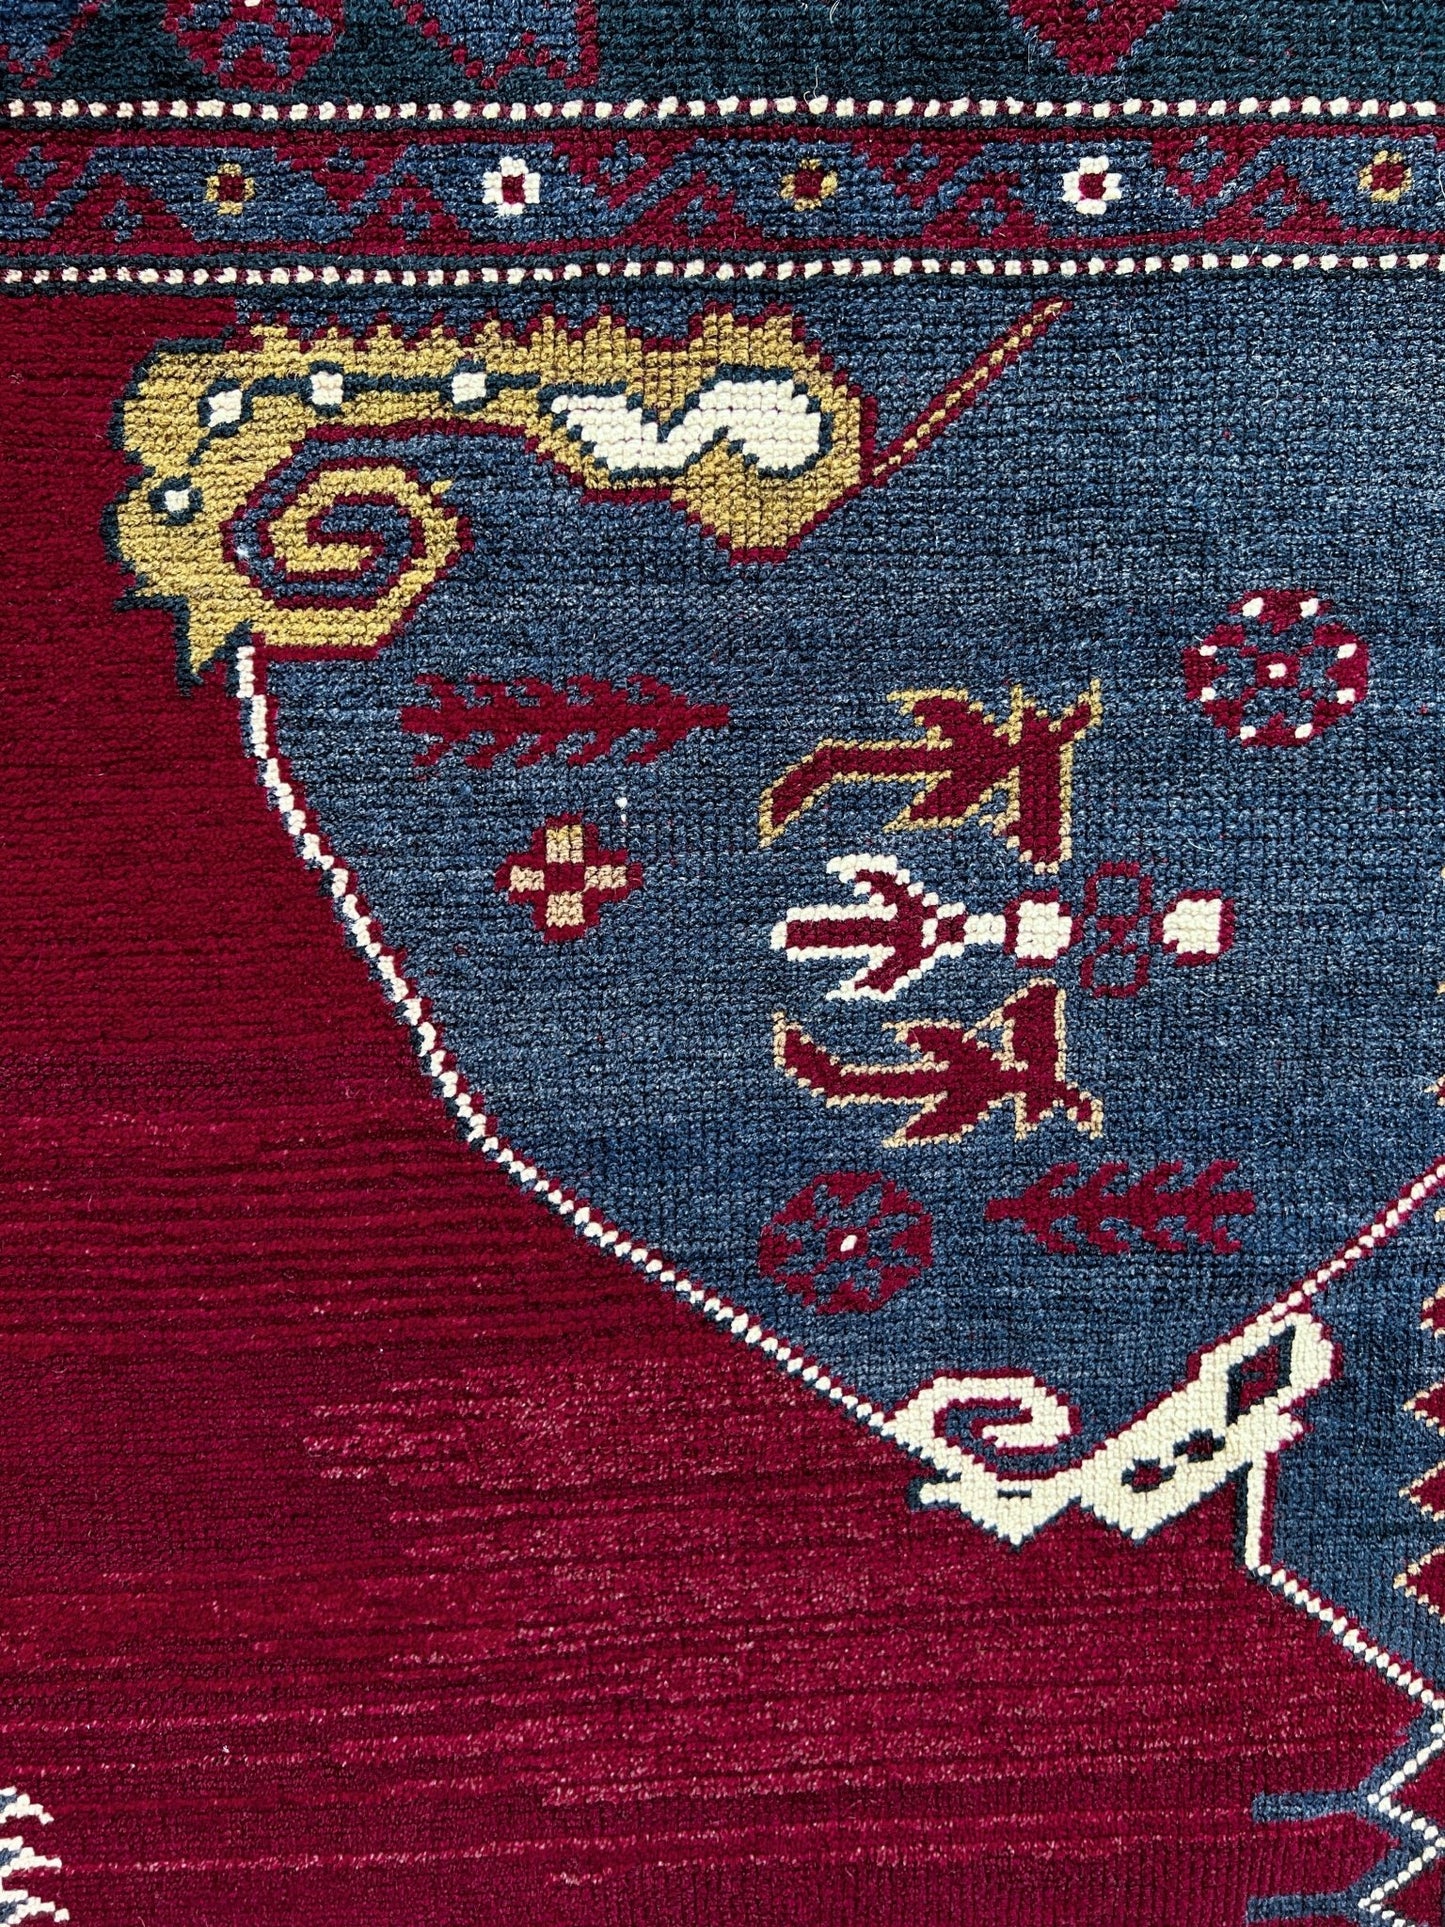 Pergamum antique turkish rug shop san francisco bay area oriental rug berkeley buy rug online california ca canada ontario